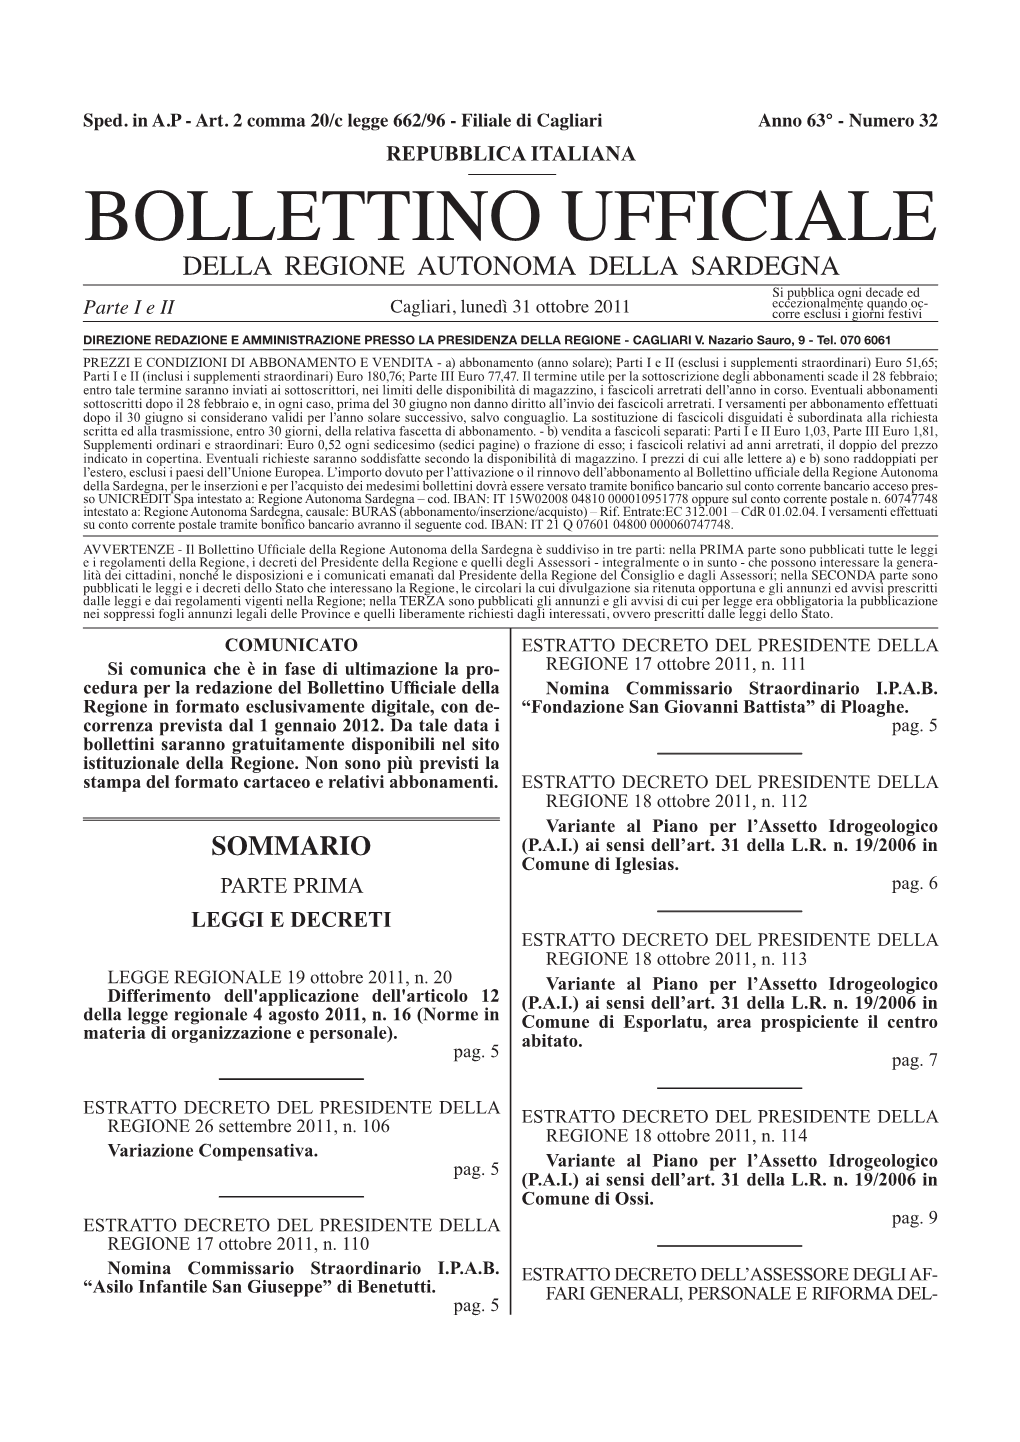 Bollettino Ufficiale